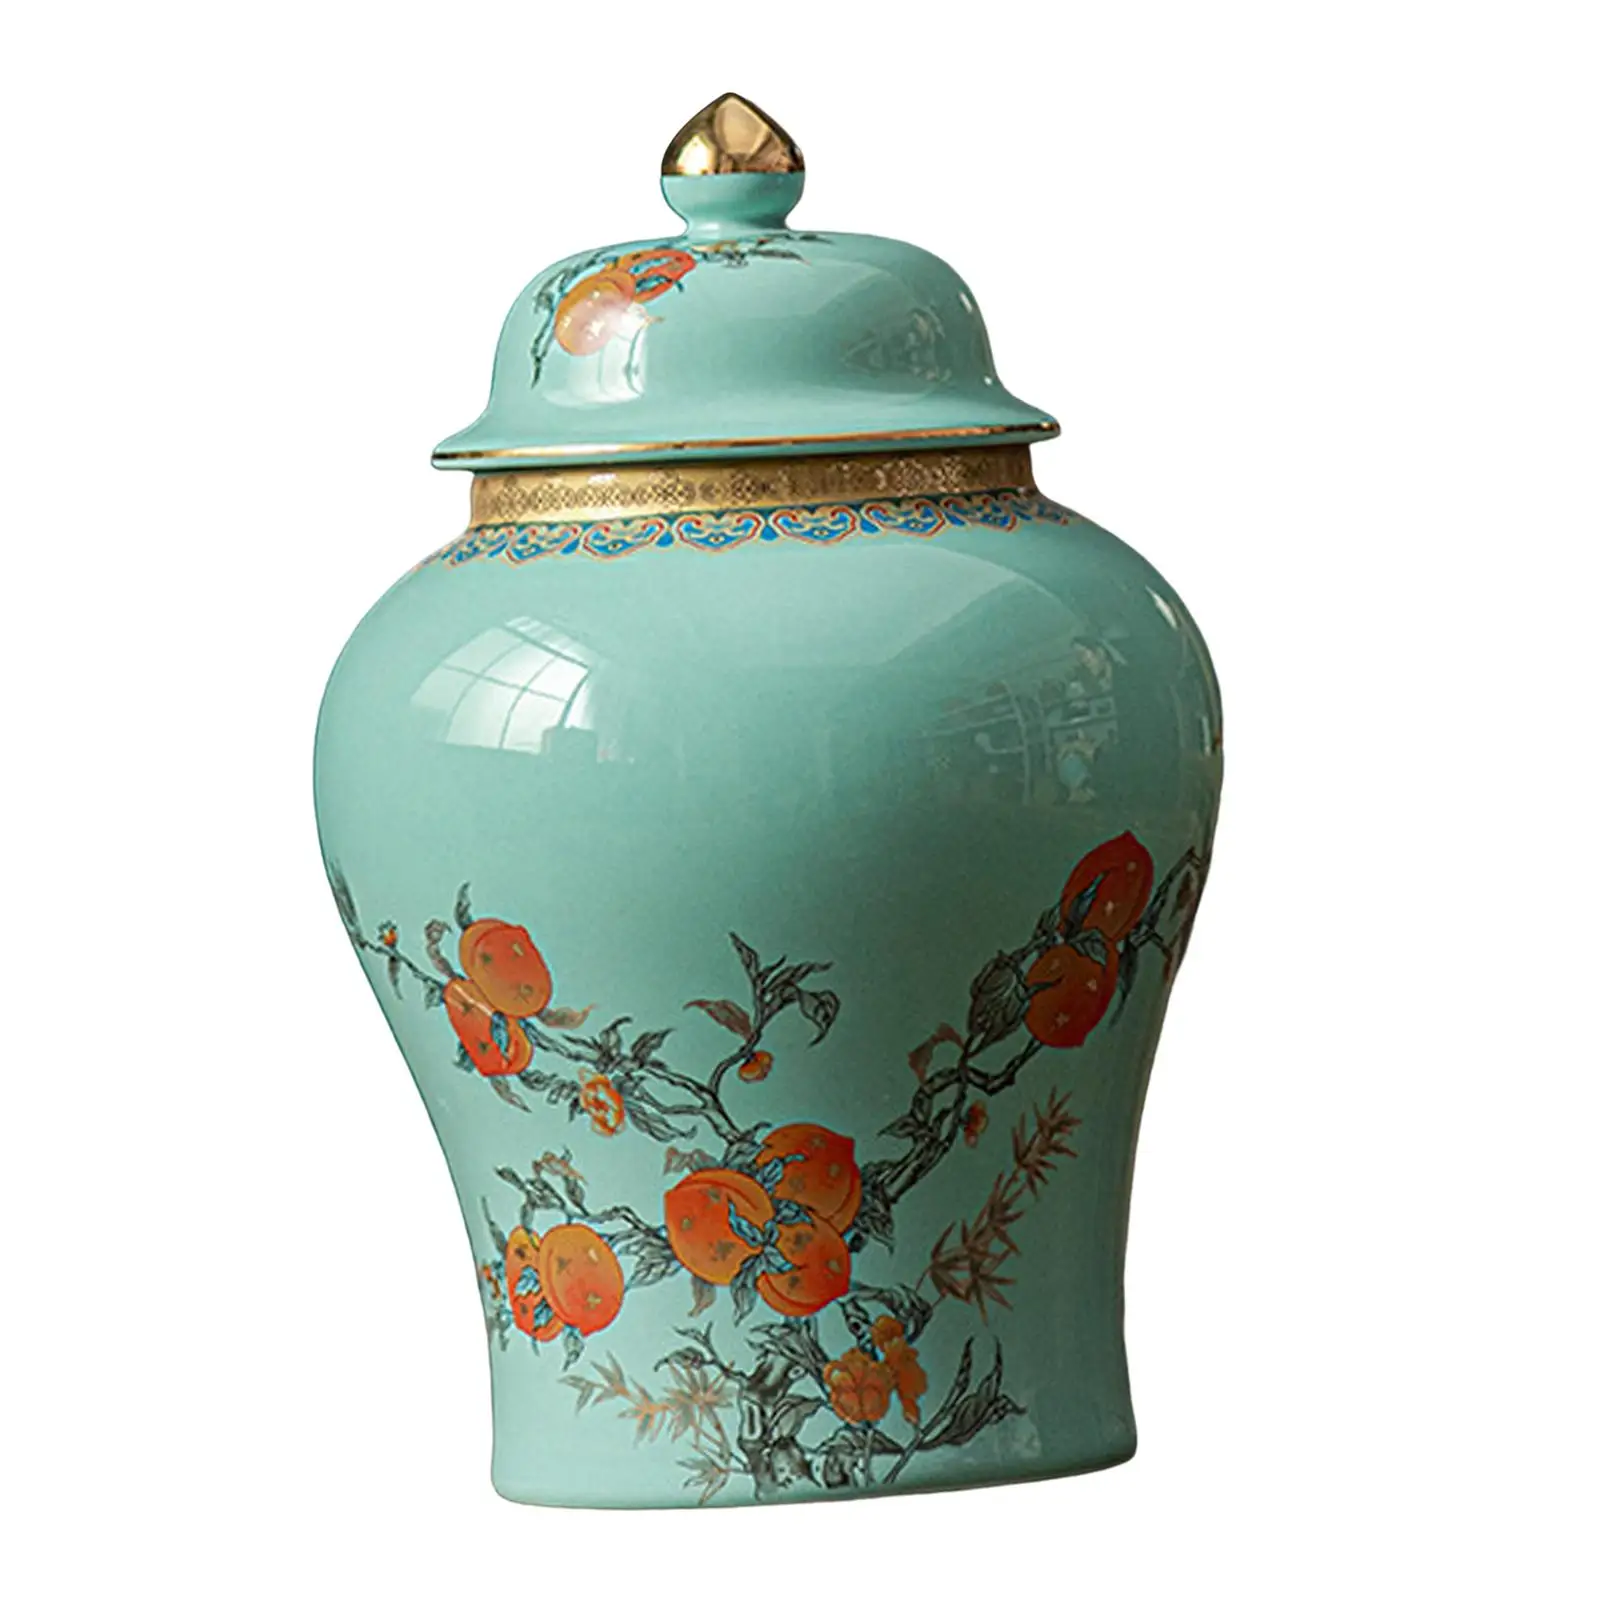 

Керамическая Имбирная банка, фарфоровый стеллаж, декоративная керамическая ваза для цветов, Цветочная композиция для свадебной вечеринки, настольное украшение